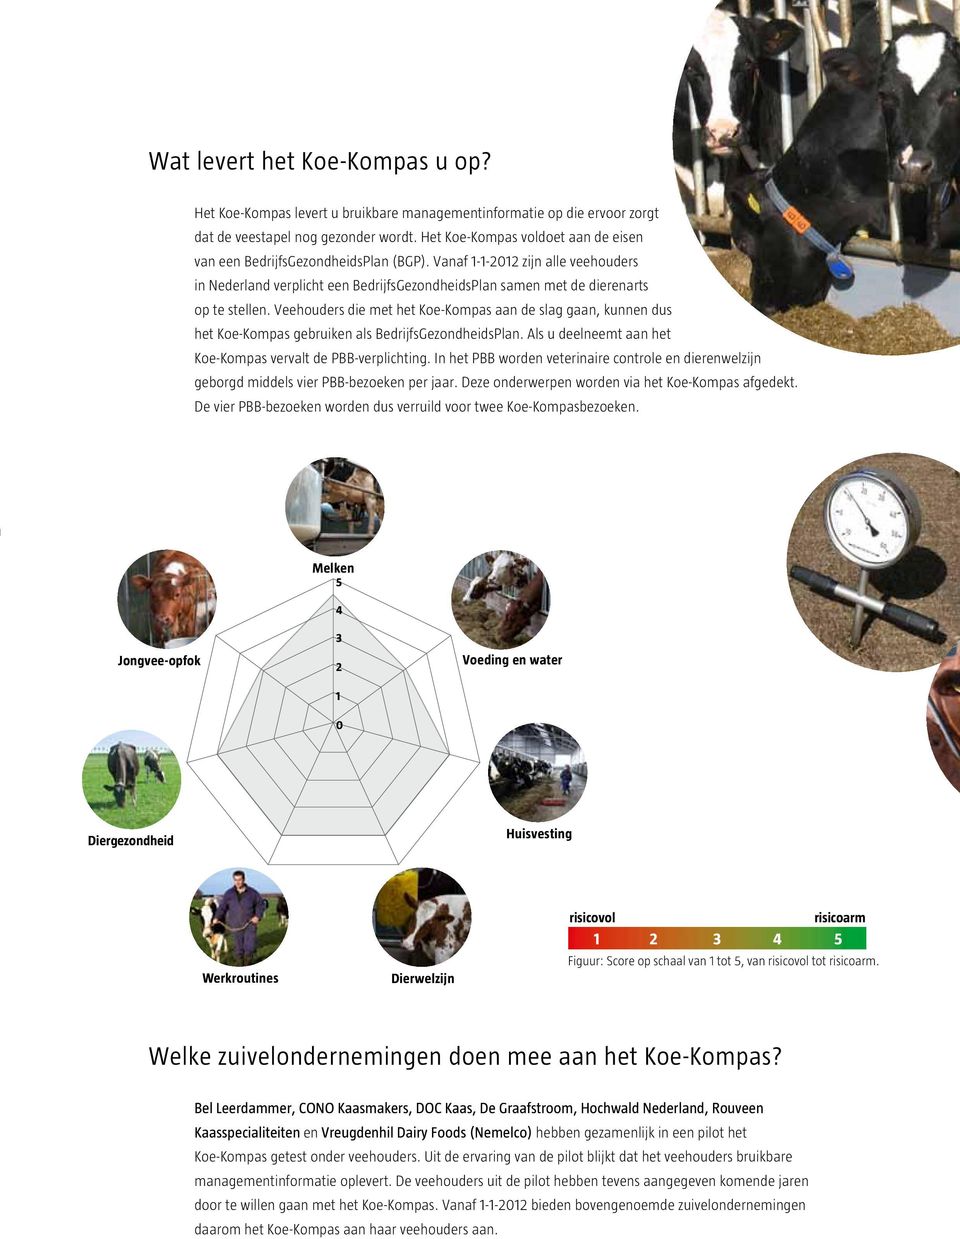 Vanaf 1-1-2012 zijn alle veehouders in Nederland verplicht een Bedrijfs GezondheidsPlan samen met de dierenarts op te stellen.